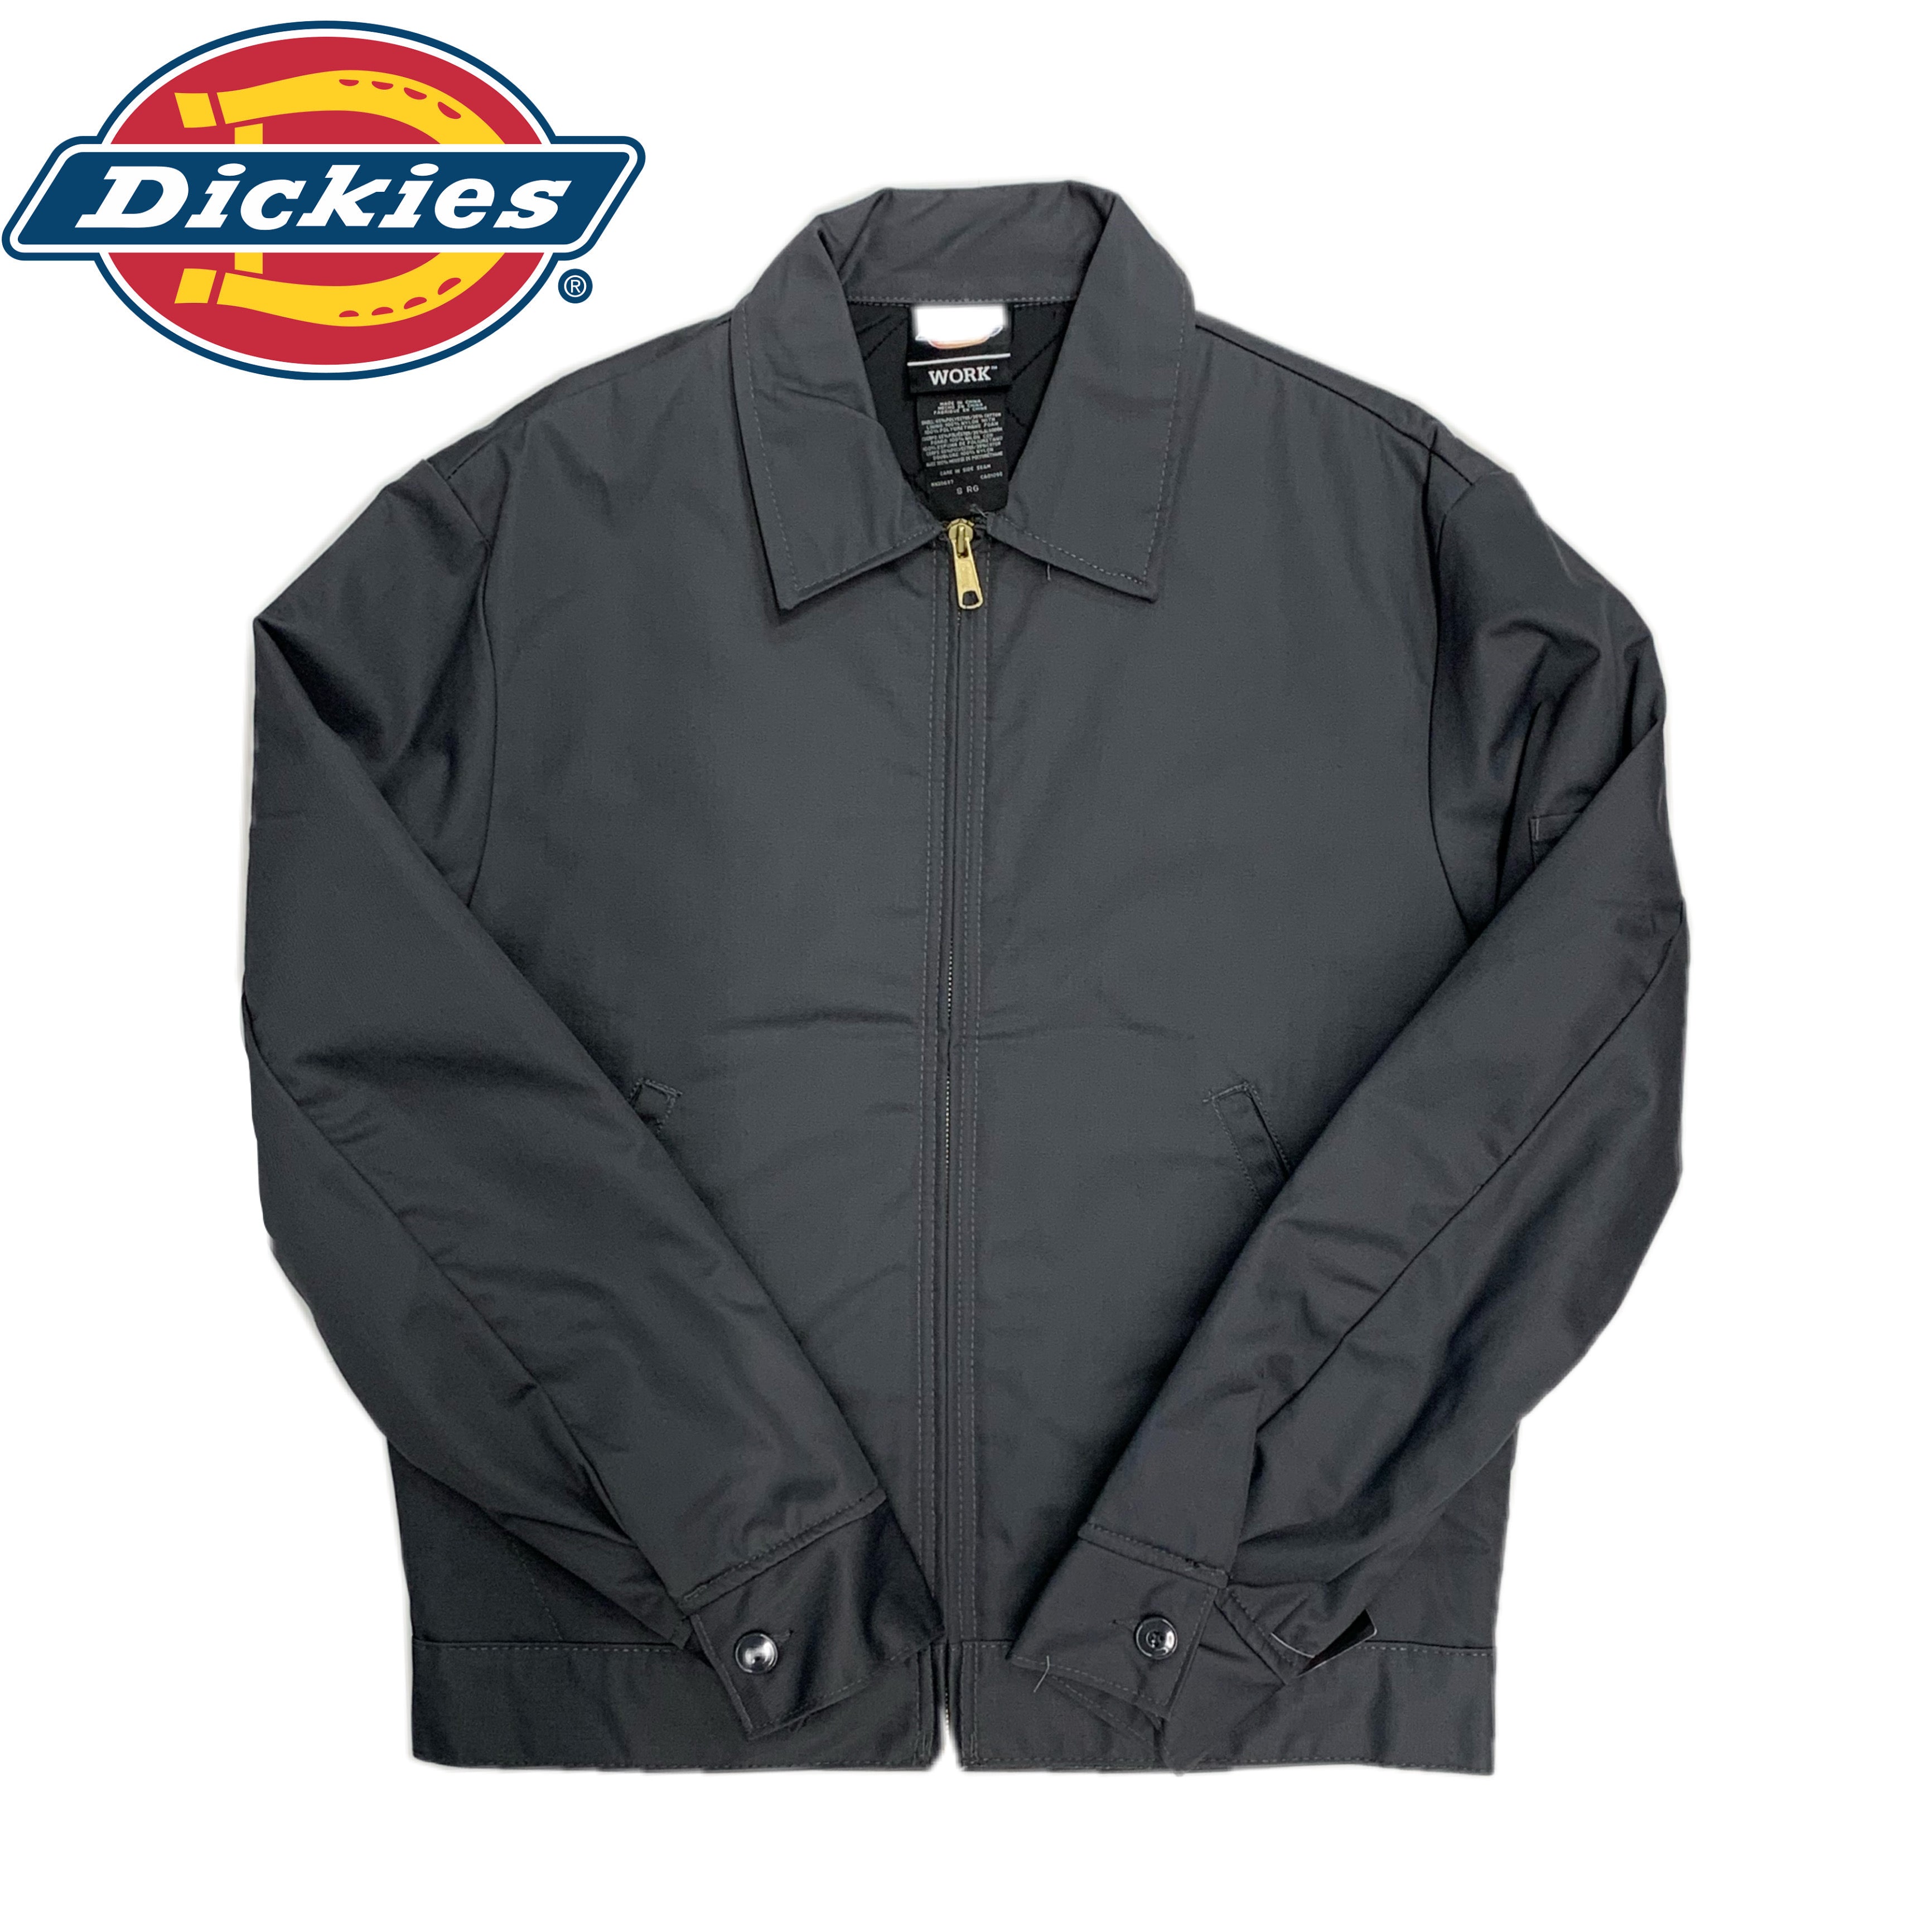 Dickies Work Jacket